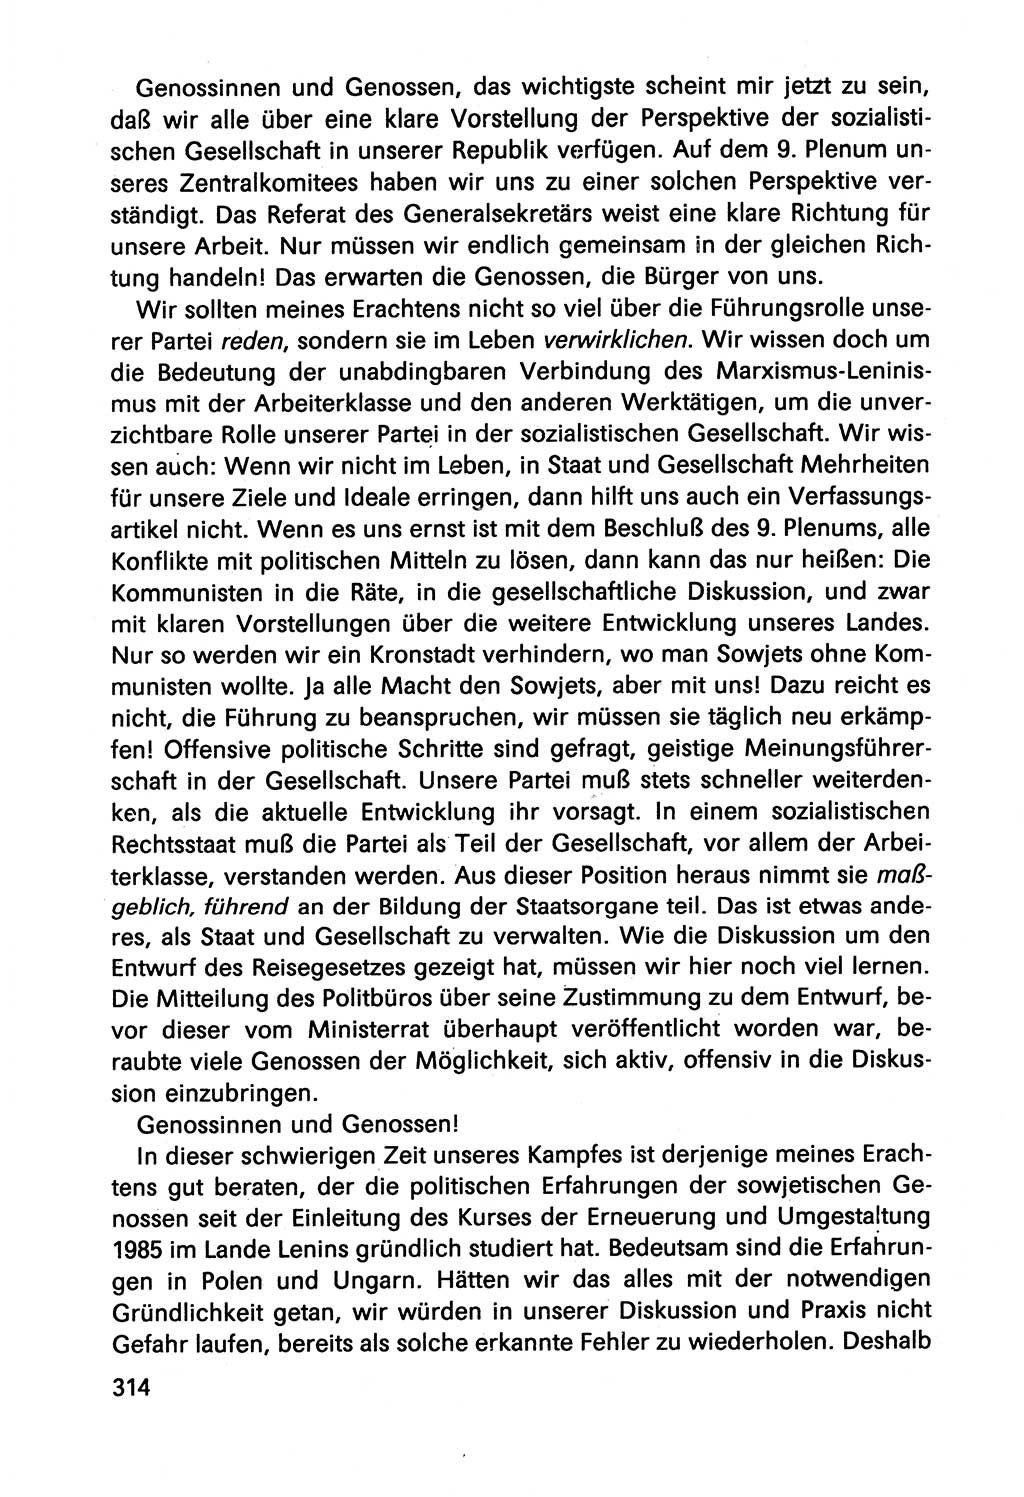 Diskussionsbeiträge, 10. Tagung des ZK (Zentralkomitee) der SED (Sozialistische Einheitspartei Deutschlands) [Deutsche Demokratische Republik (DDR)] 1989, Seite 314 (Disk.-Beitr. 10. Tg. ZK SED DDR 1989, S. 314)